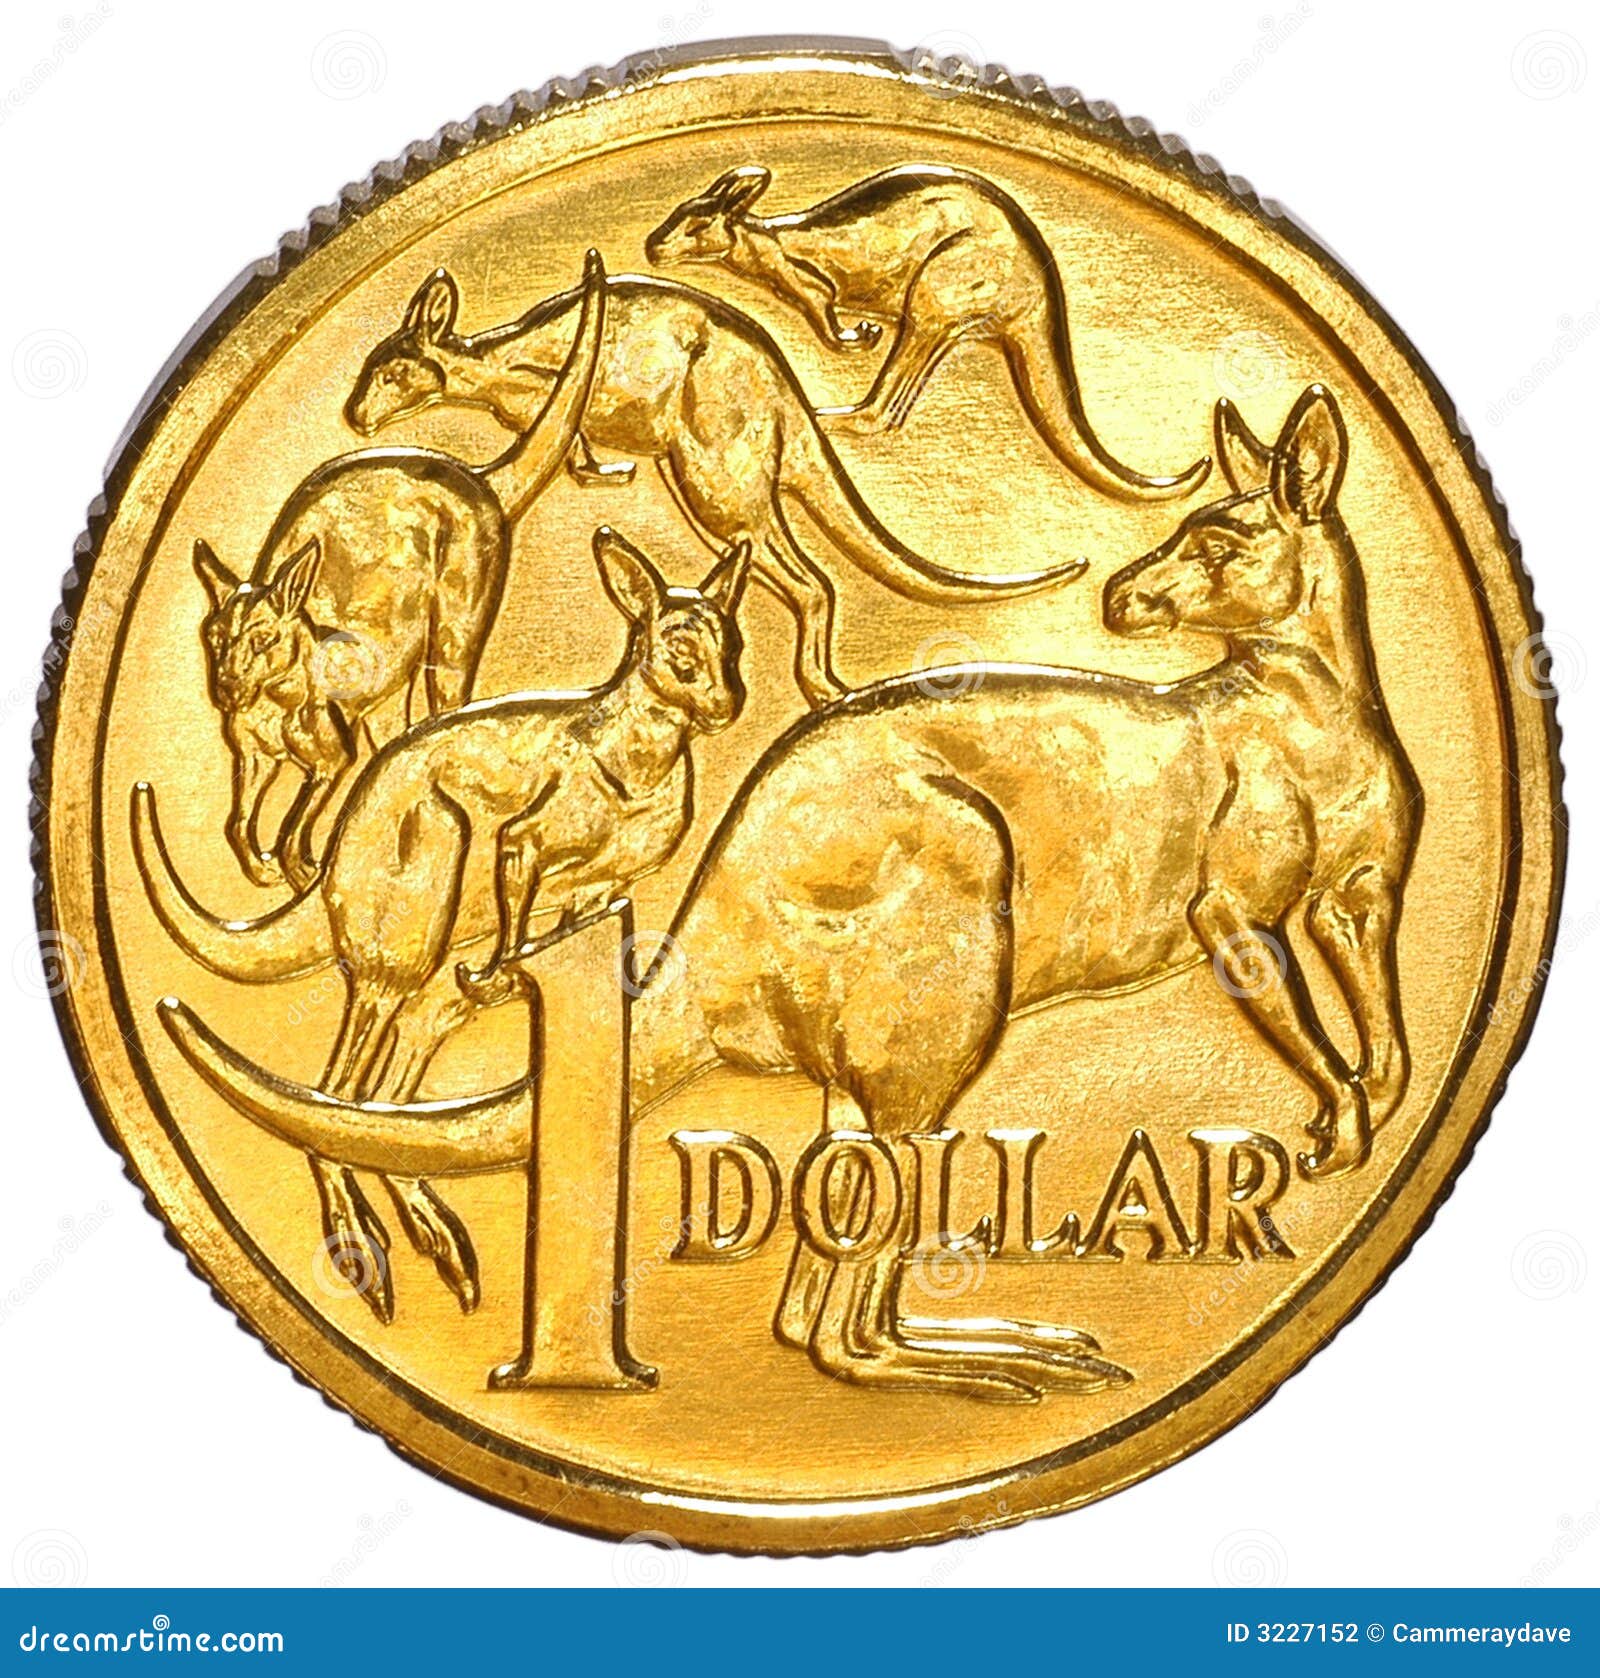 澳大利亚纸币和硬币 库存图片. 图片 包括有 关闭, 现金, 广告牌, 部分, 货币, 班珠尔, 硬币, 附注 - 54107185